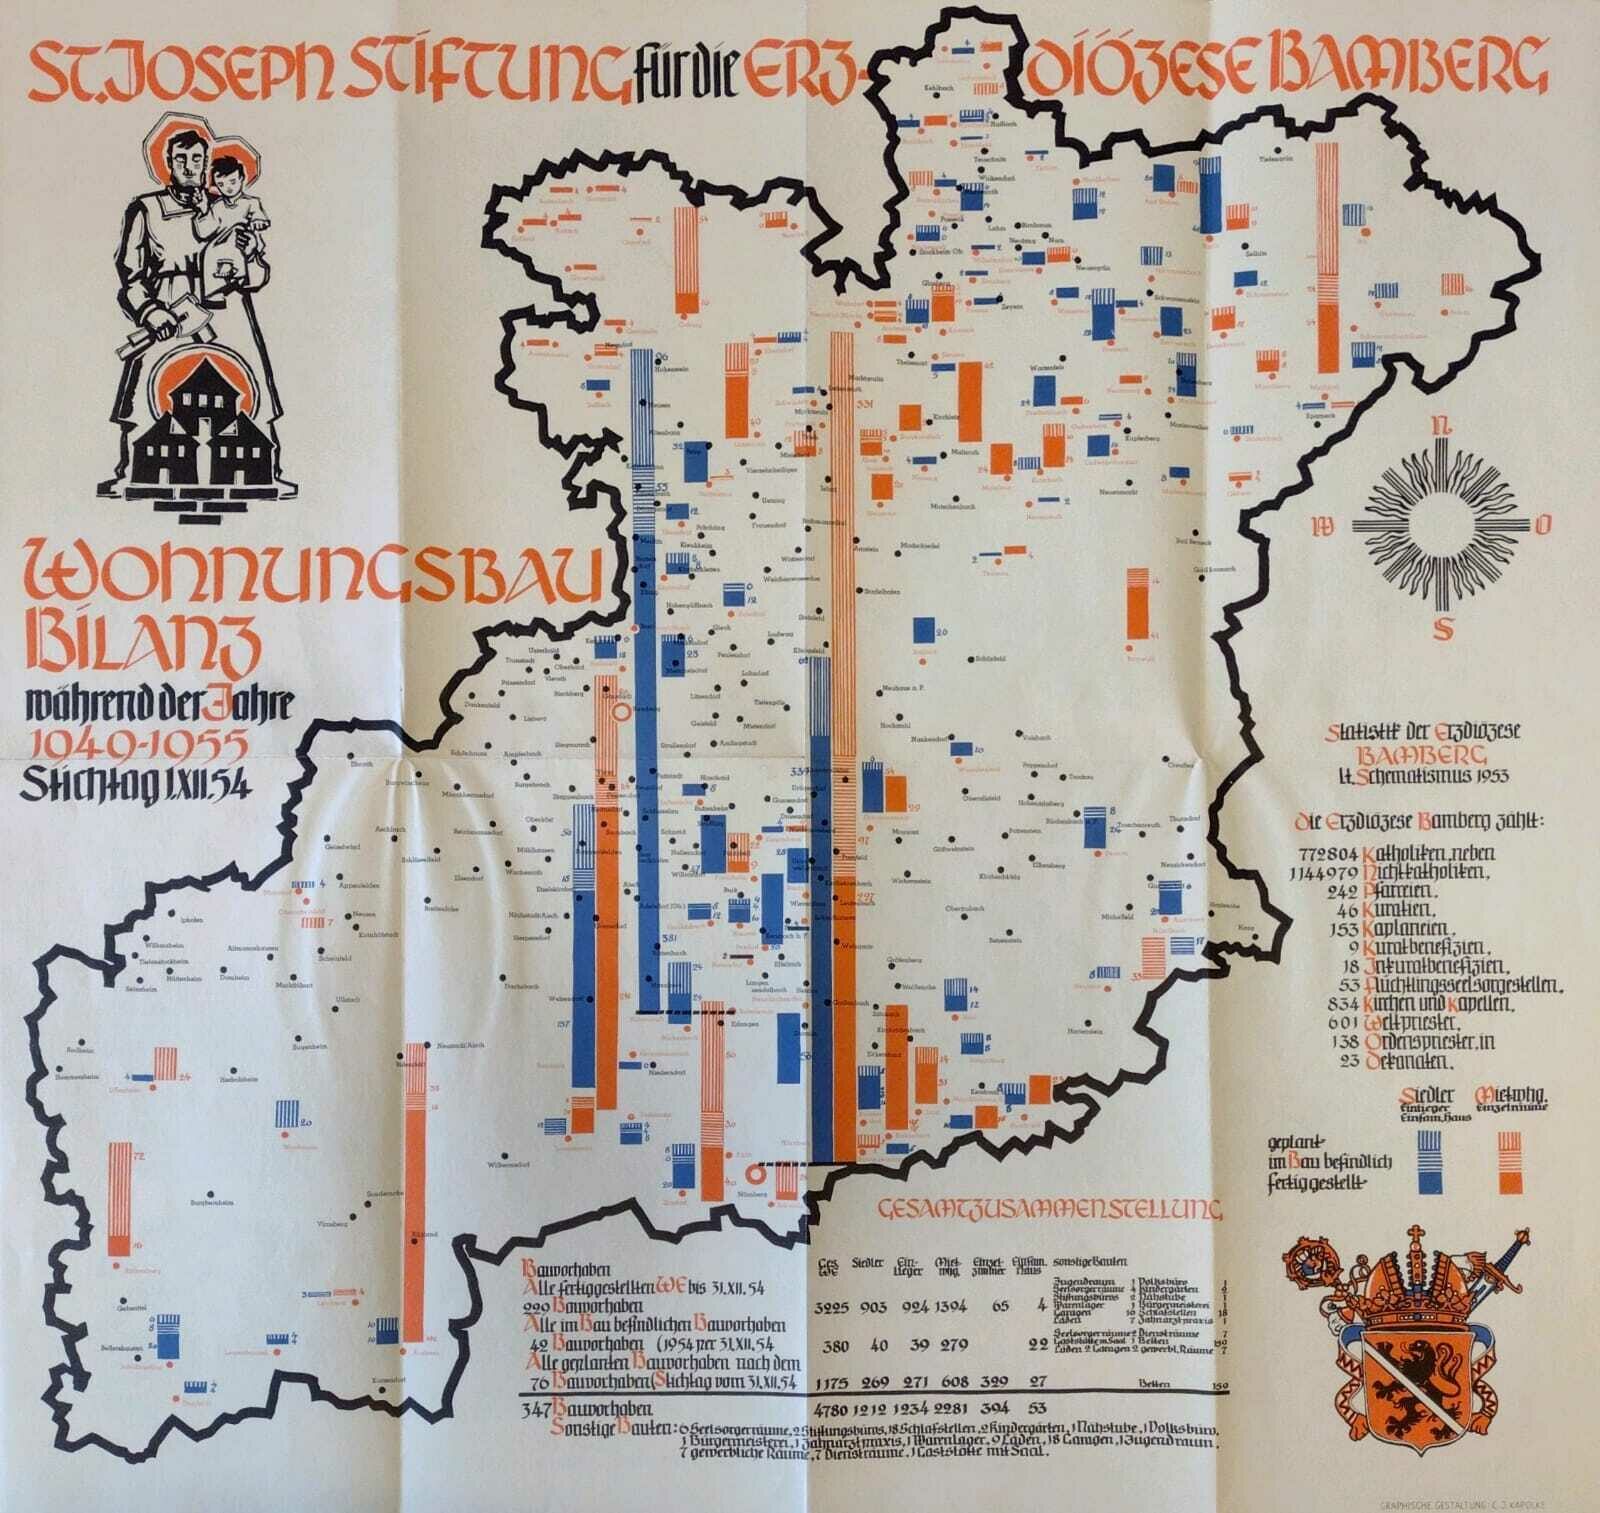 Karte mit der Erfolgs bilanz des Wohnungsbaus in der Dioezese Bamberg